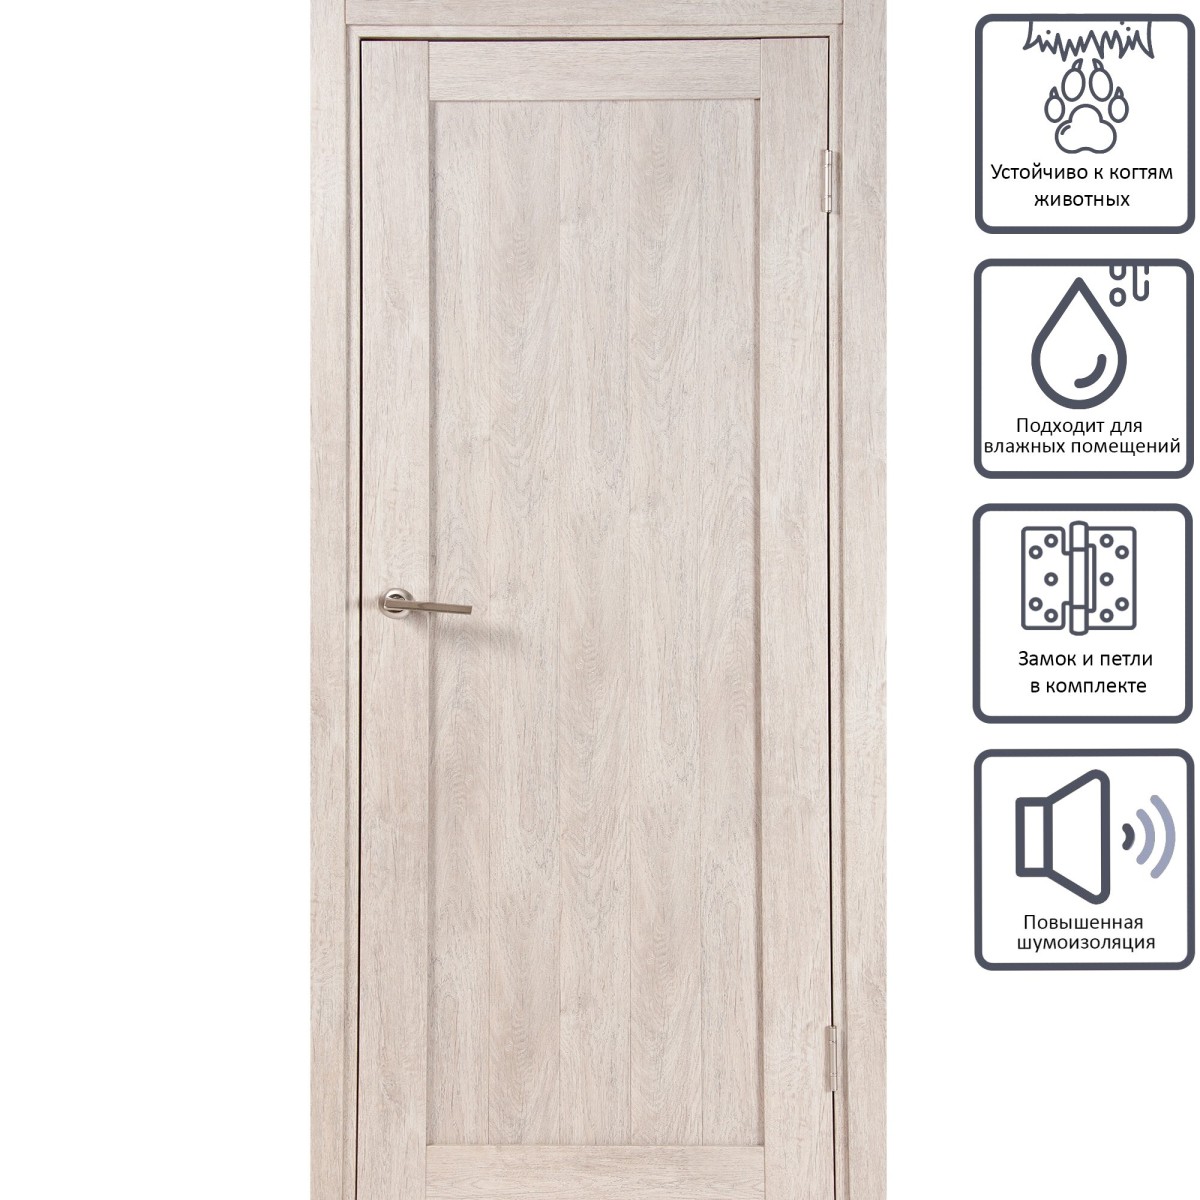 Дверь межкомнатная глухая Кантри 80x200 см, ПВХ, цвет дуб эссо, с фурнитурой